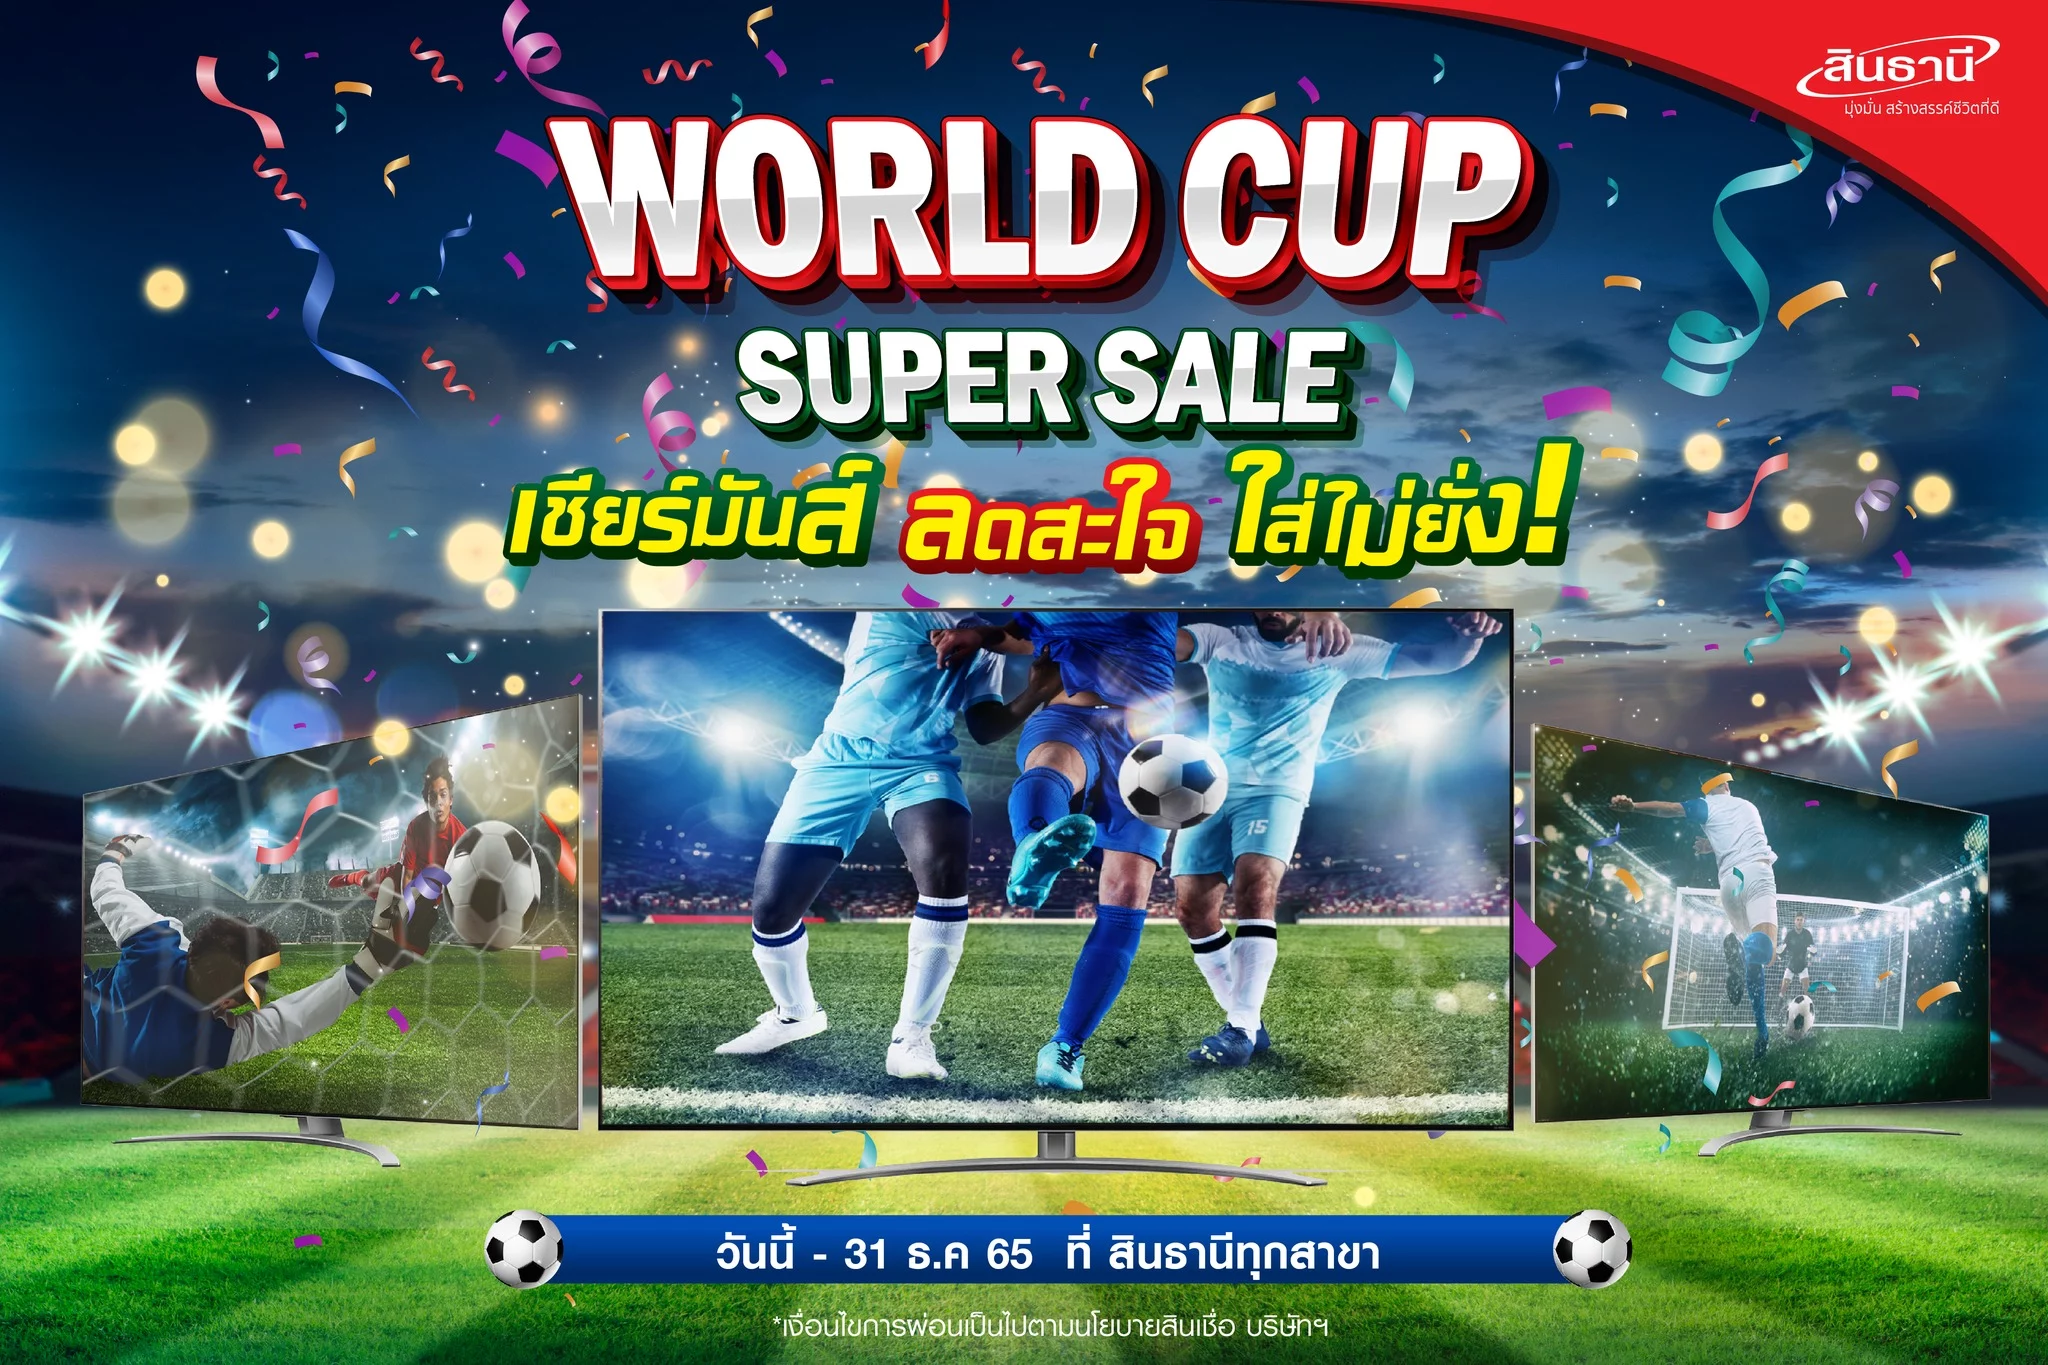 โปรโมชัน Super Sale ผ่อนทีวีสุดคุ้ม 0% 12 เดือน รับฟุตบอลโลก